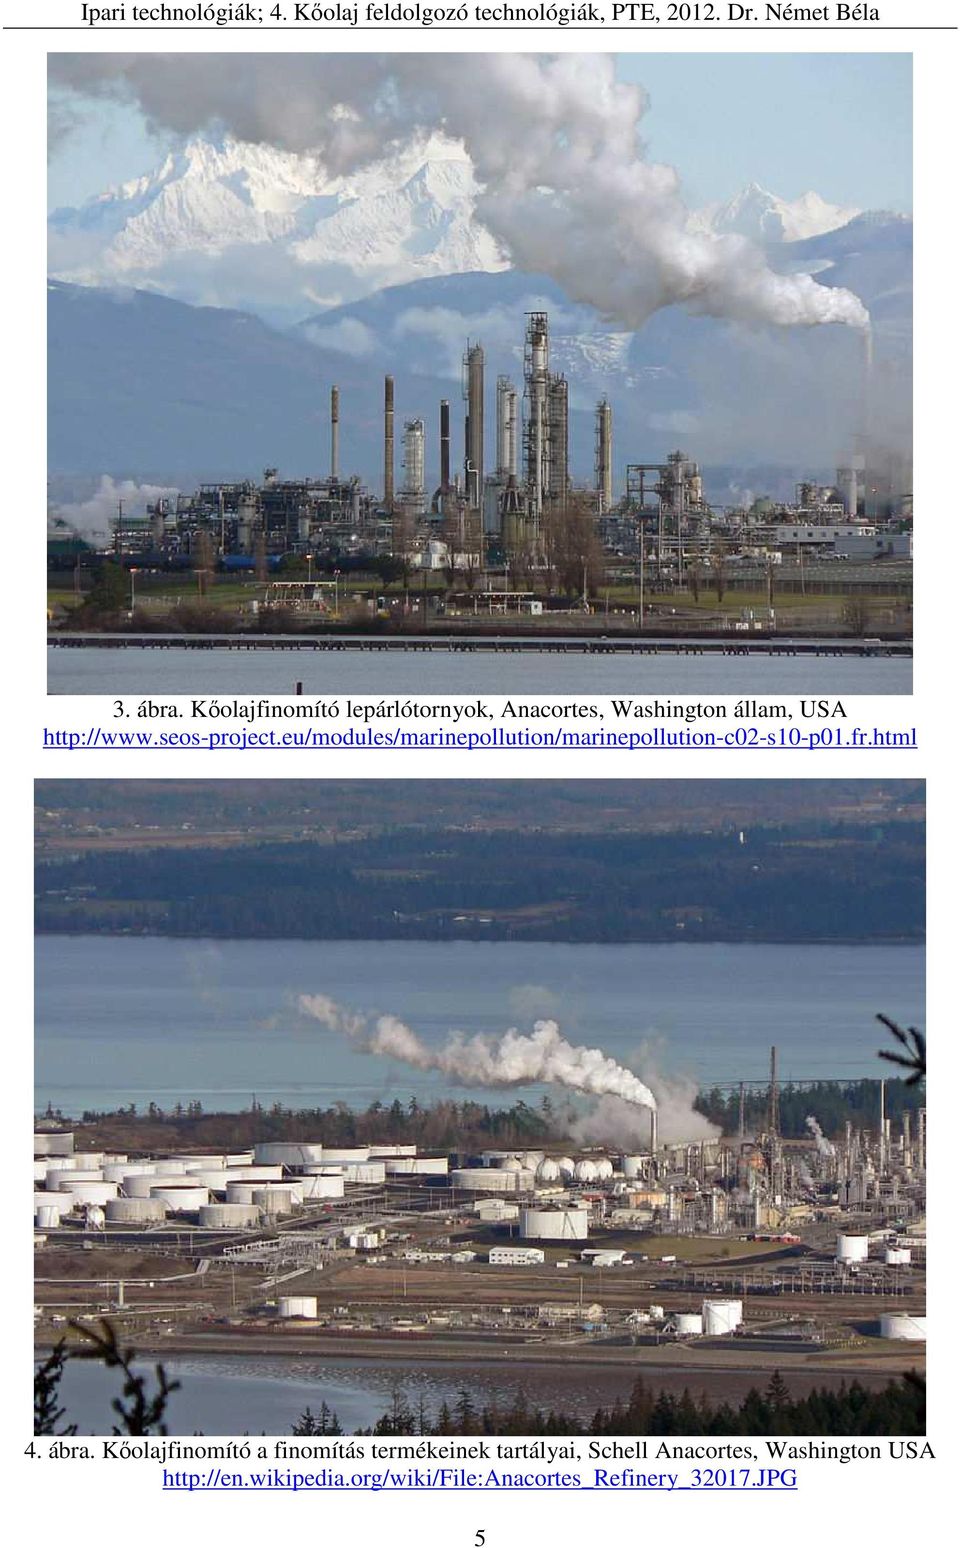 4. Kőolaj feldolgozó technológiák, frakcionálás, krakkolás, környezeti  hatásaik - PDF Free Download